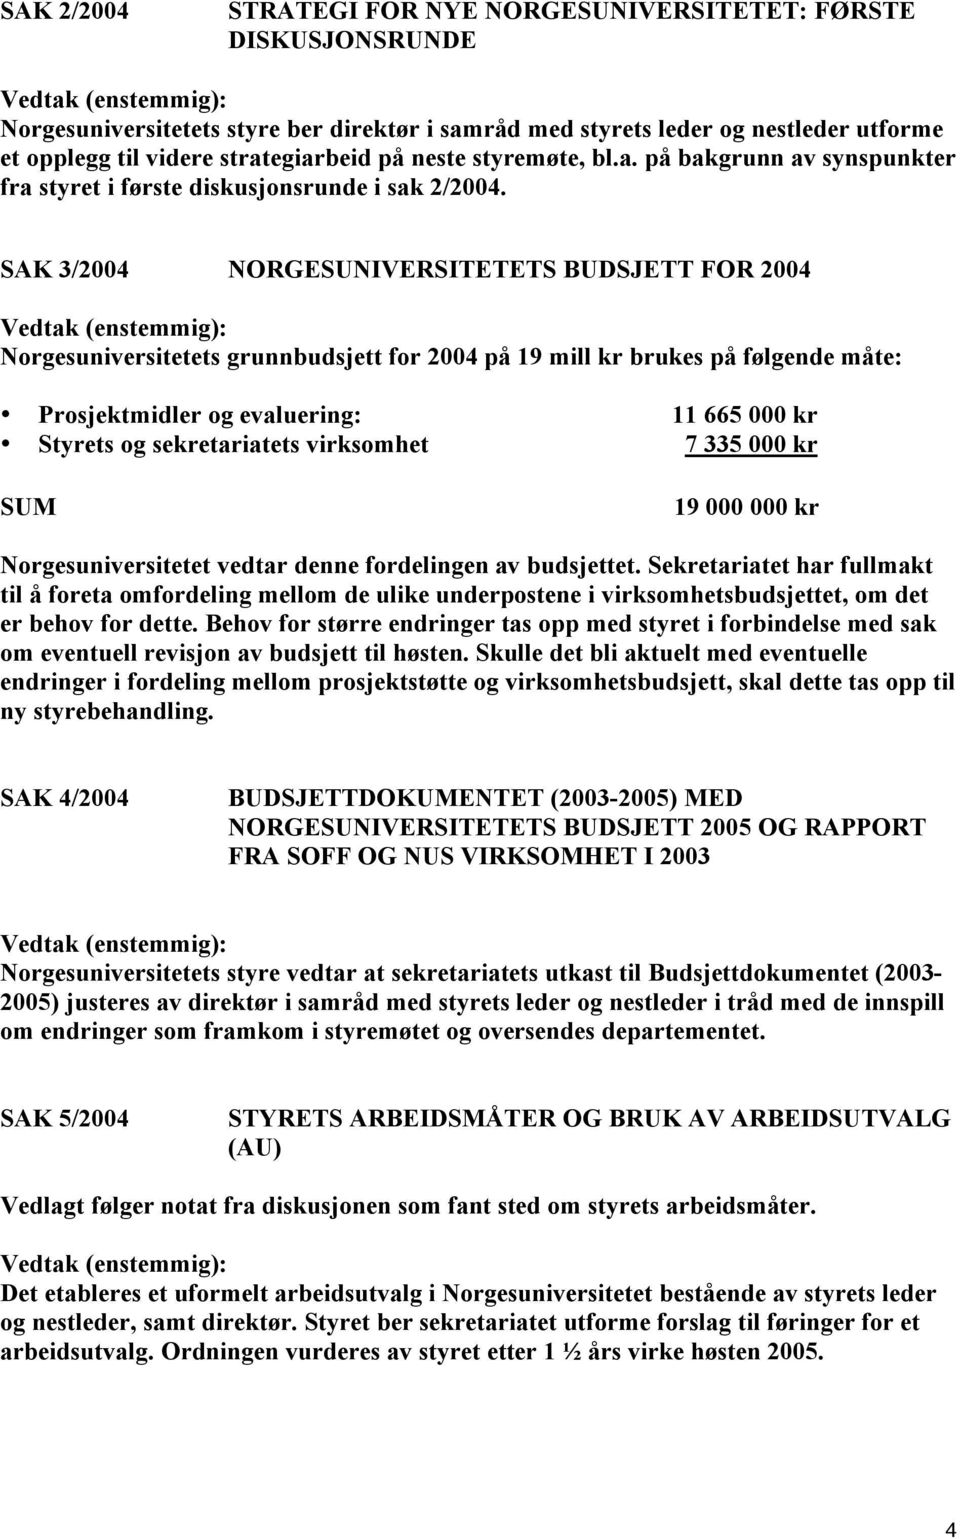 SAK 3/2004 NORGESUNIVERSITETETS BUDSJETT FOR 2004 Norgesuniversitetets grunnbudsjett for 2004 på 19 mill kr brukes på følgende måte: Prosjektmidler og evaluering: 11 665 000 kr Styrets og